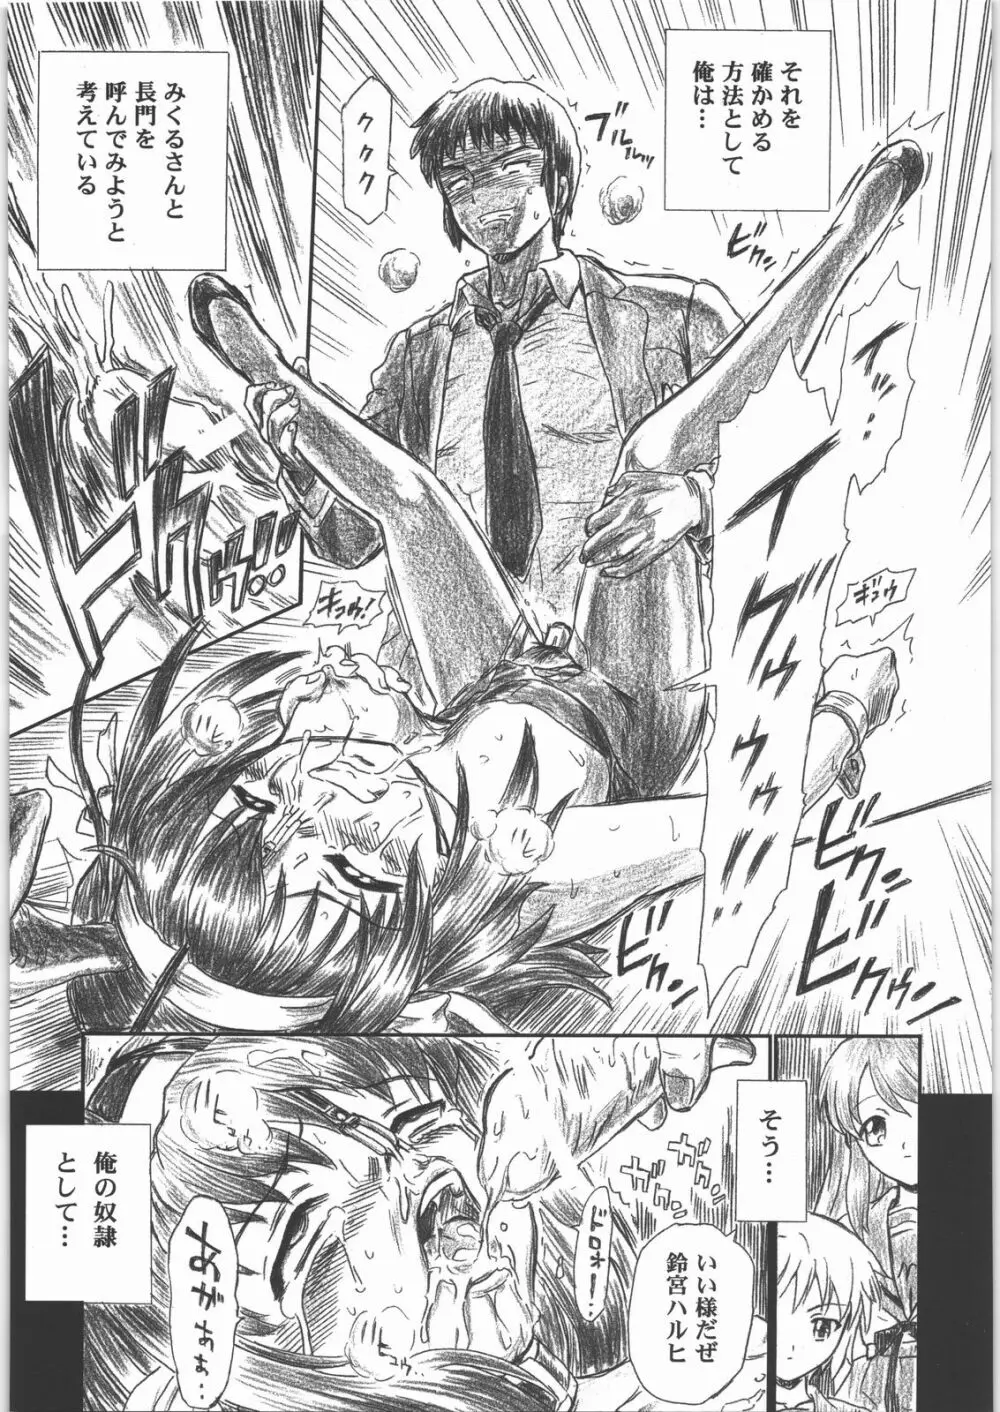 TAIL-MAN HARUHI SUZUMIYA BOOK 40ページ